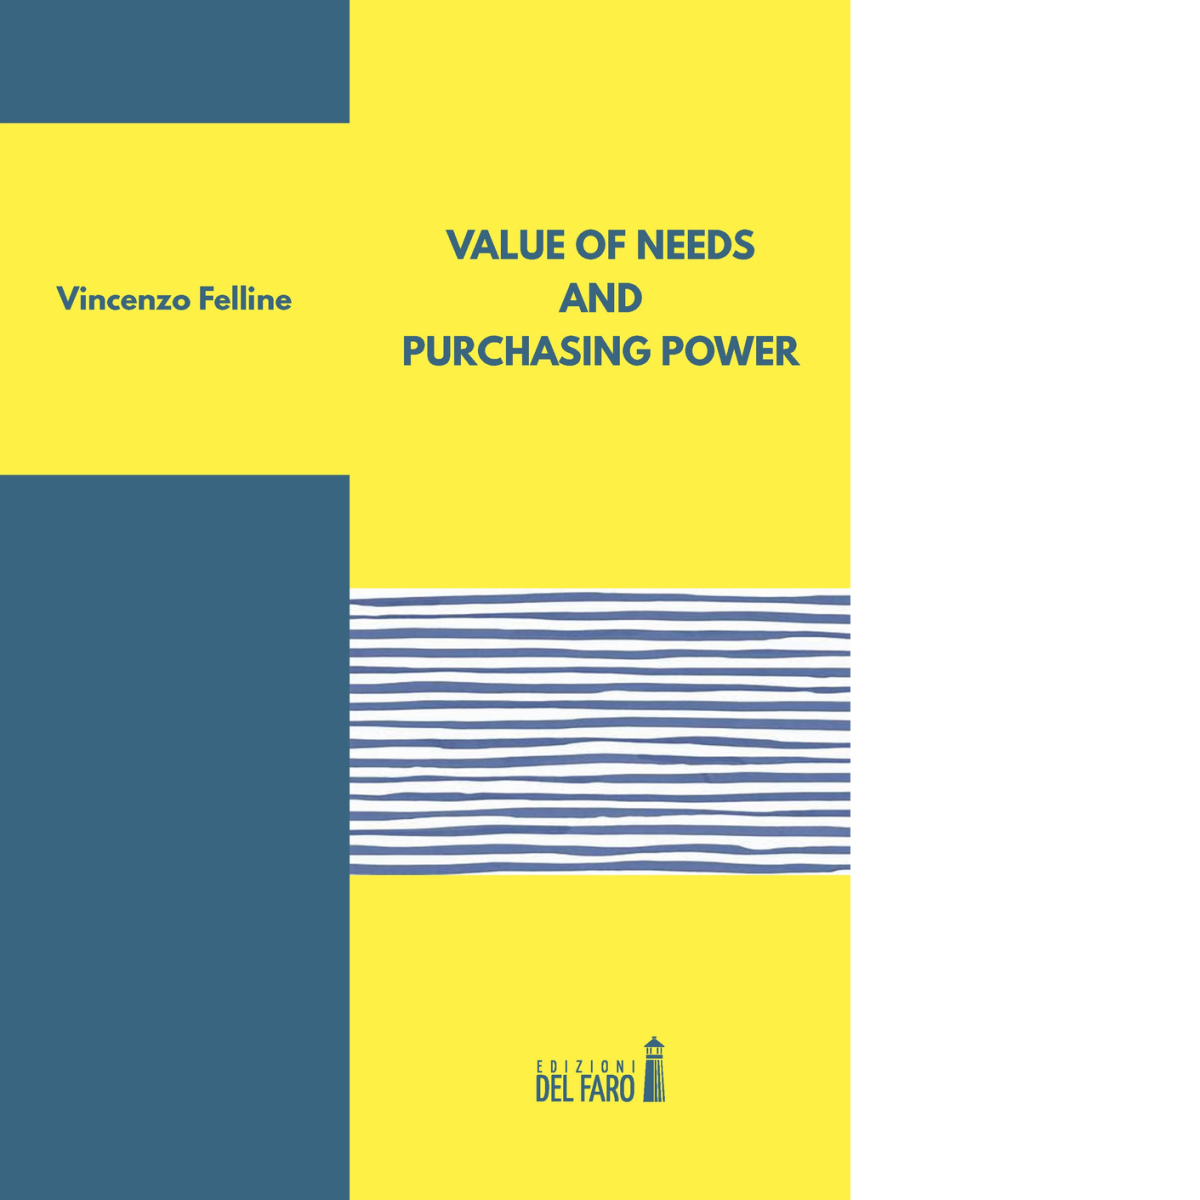 Value of needs and purchasing power di Felline Vincenzo - Del Faro, 2019